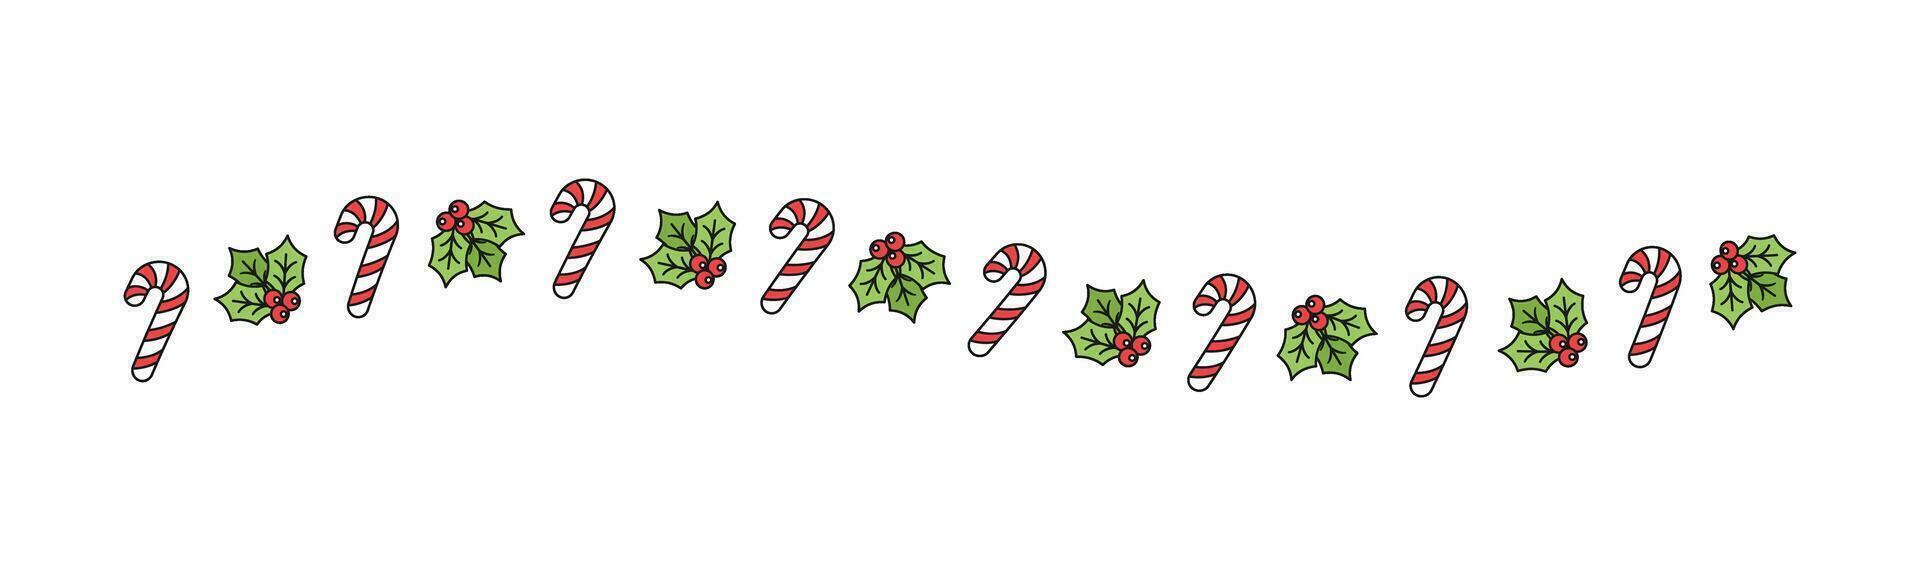 Natale a tema decorativo ondulato confine e testo divisore, vischio e caramella canna modello. vettore illustrazione.